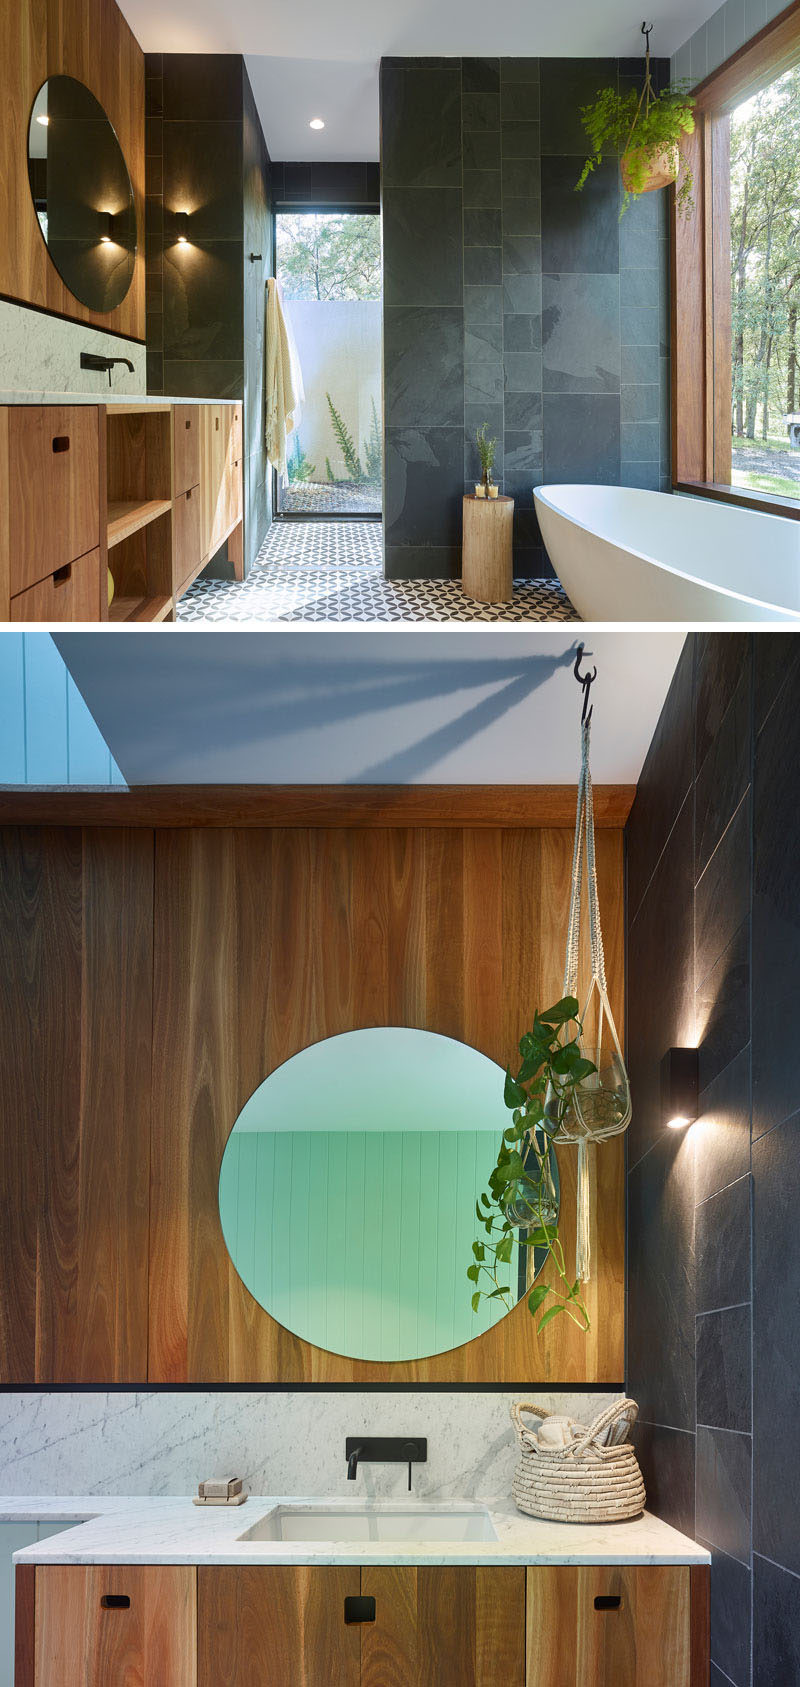 В этой современной ванной комнате панель частично матового обеспечивает уединение в душе, не загораживая свет, из большого окна рядом с ванной открывается вид на деревья. # ВаннаяДизайн # Современная